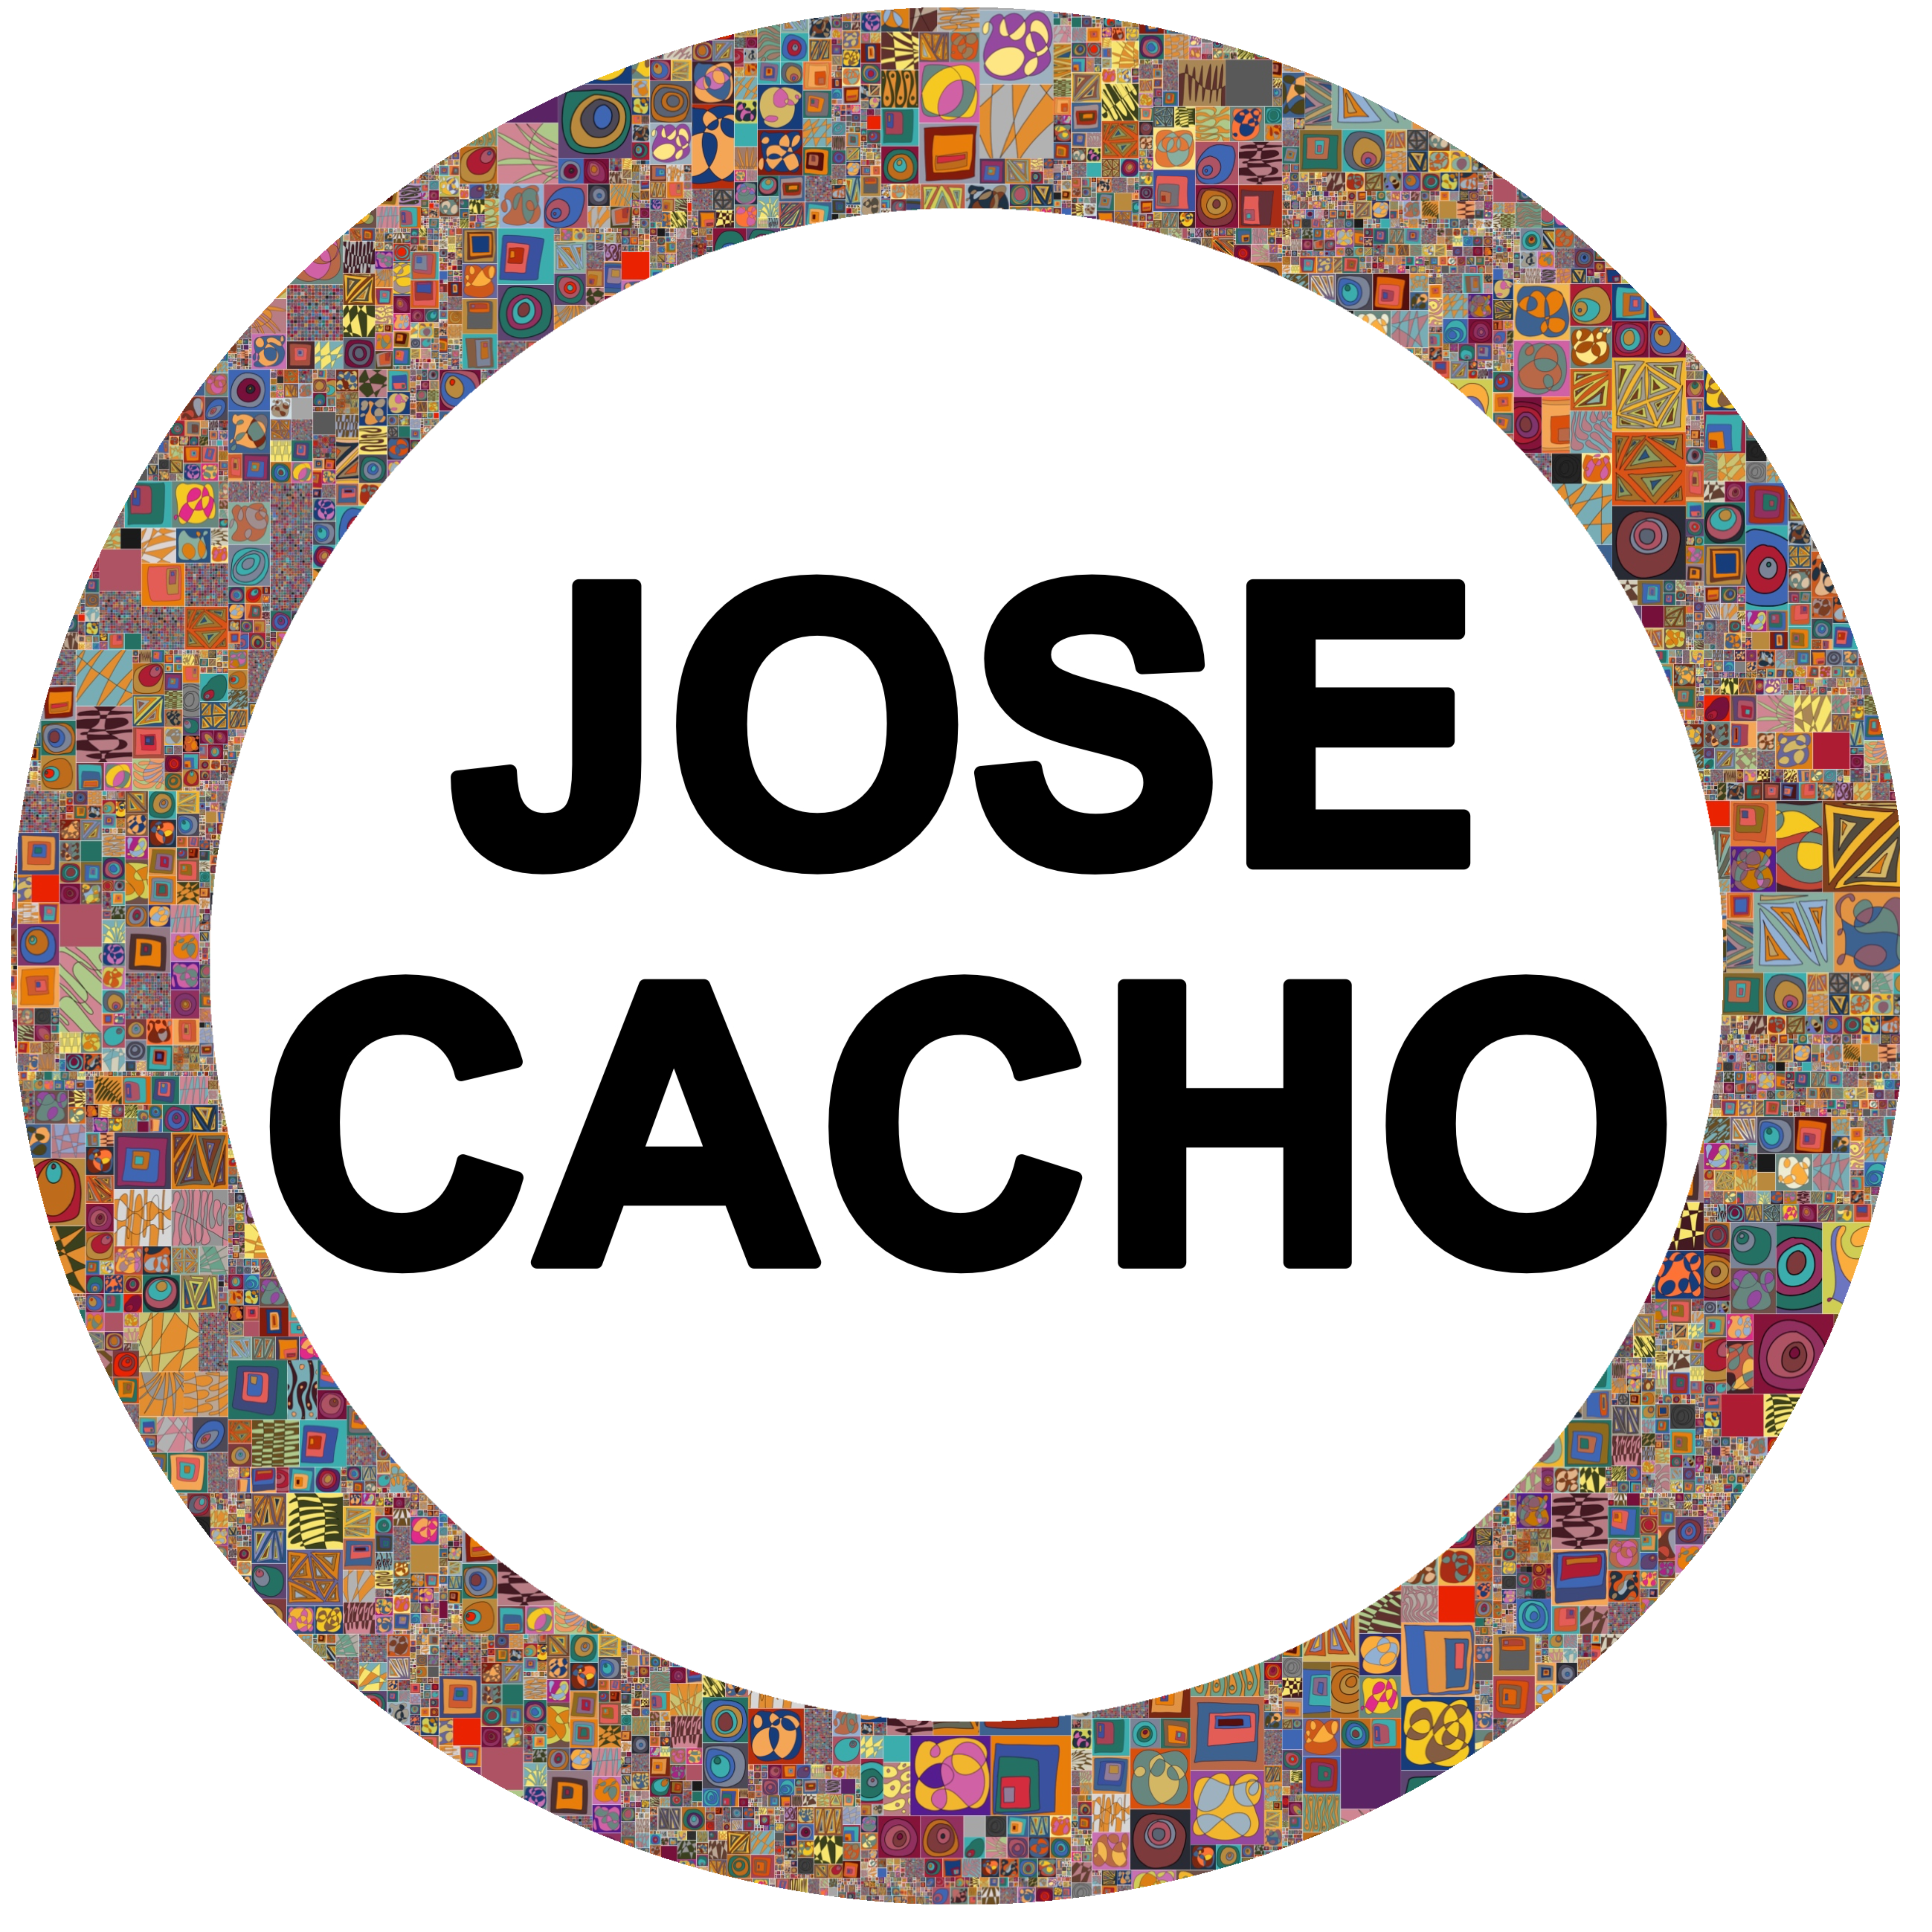 José Cacho